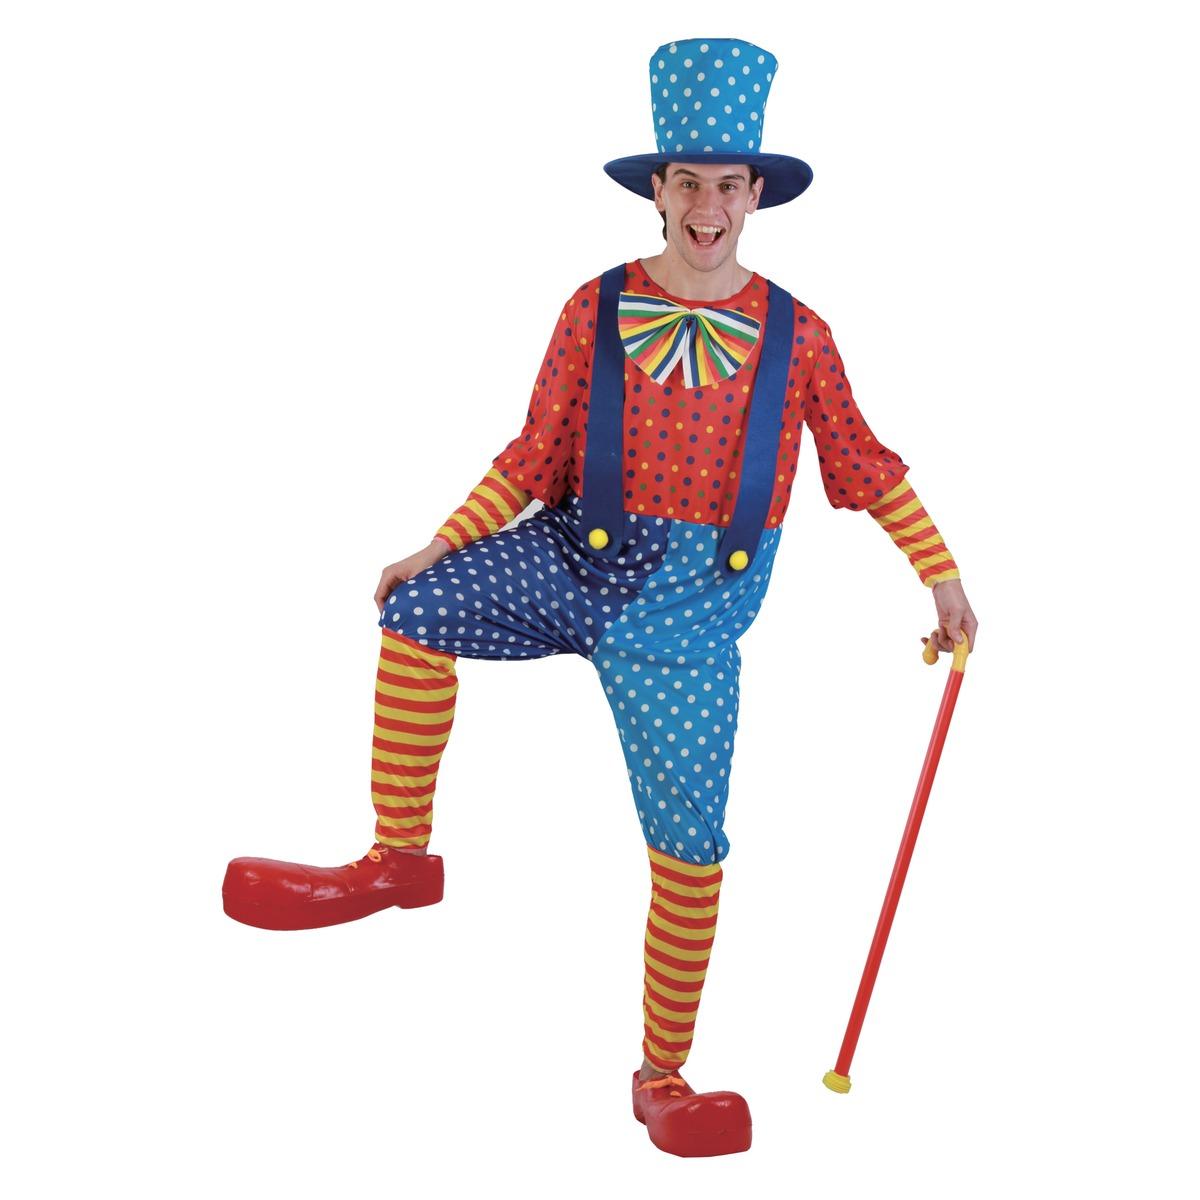 Déguisement clown homme - Taille unique - Multicolore